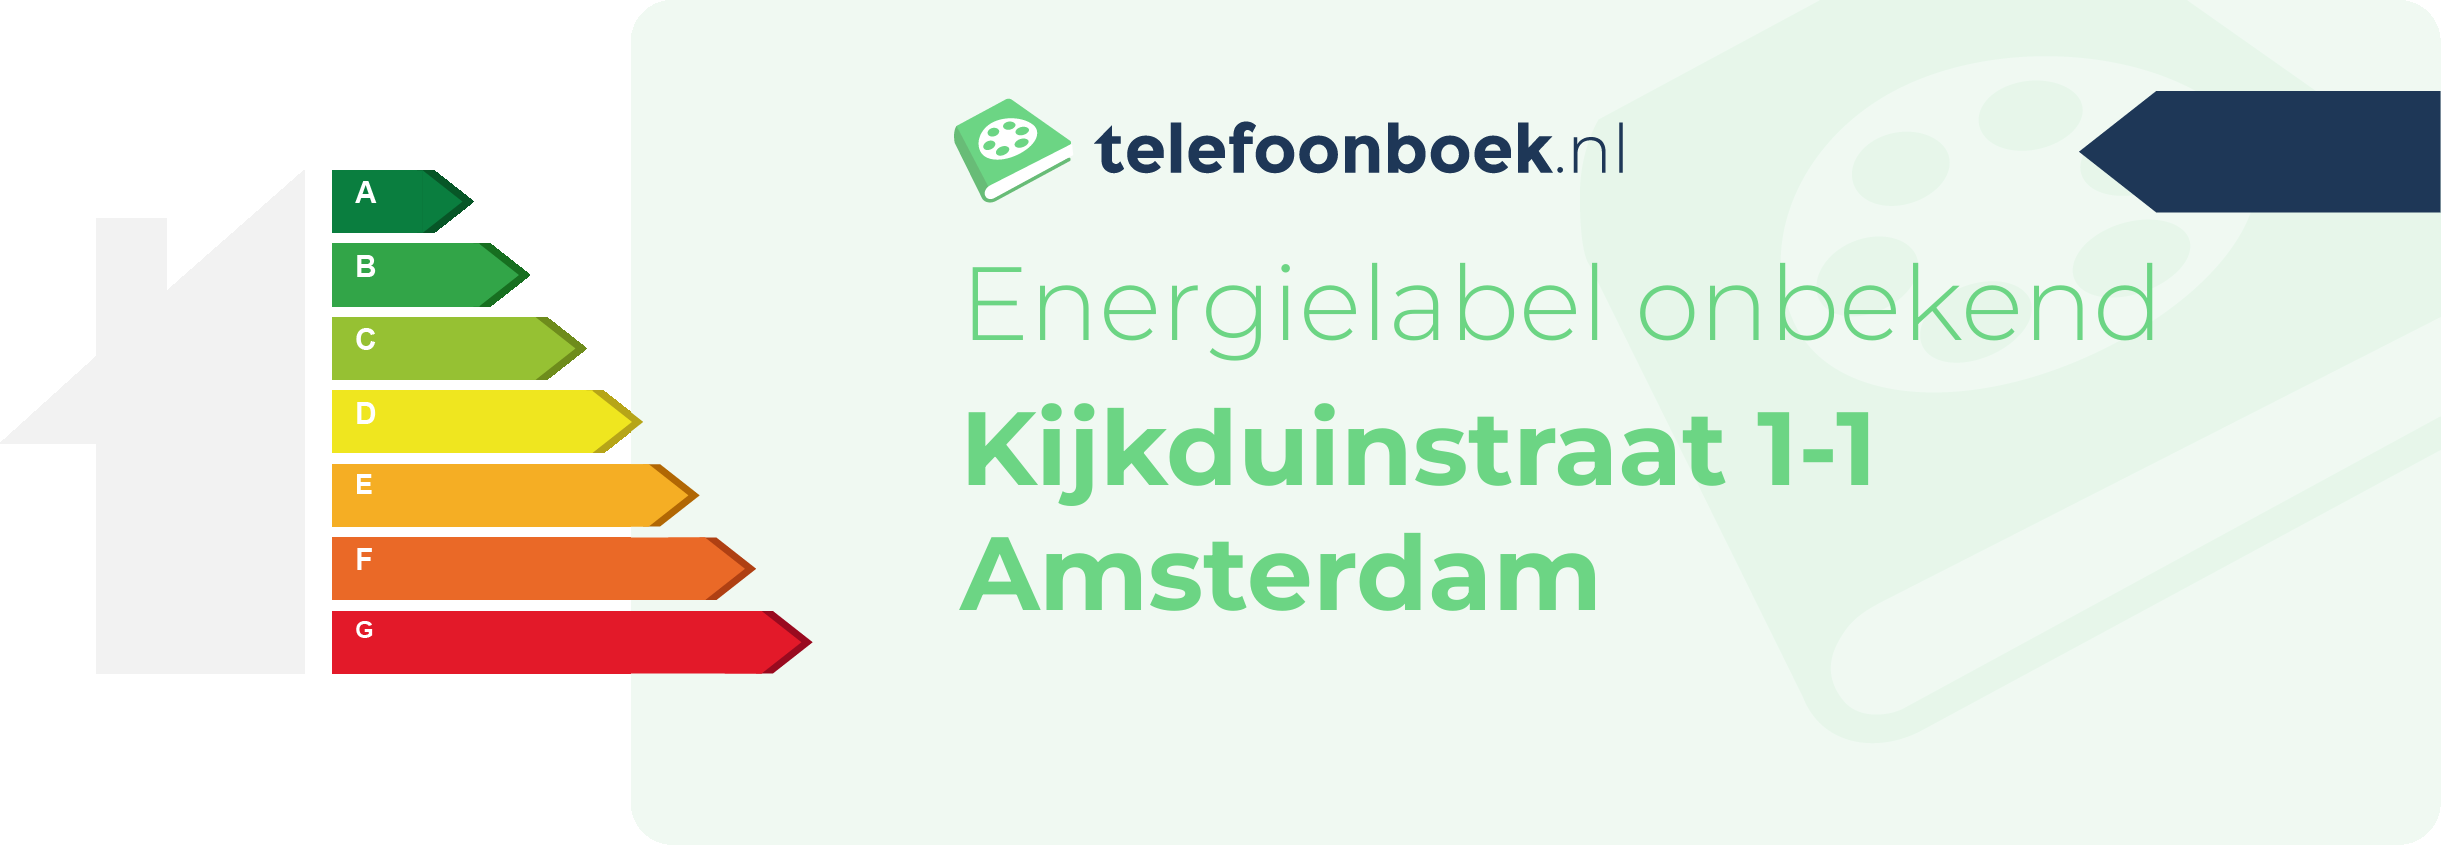 Energielabel Kijkduinstraat 1-1 Amsterdam